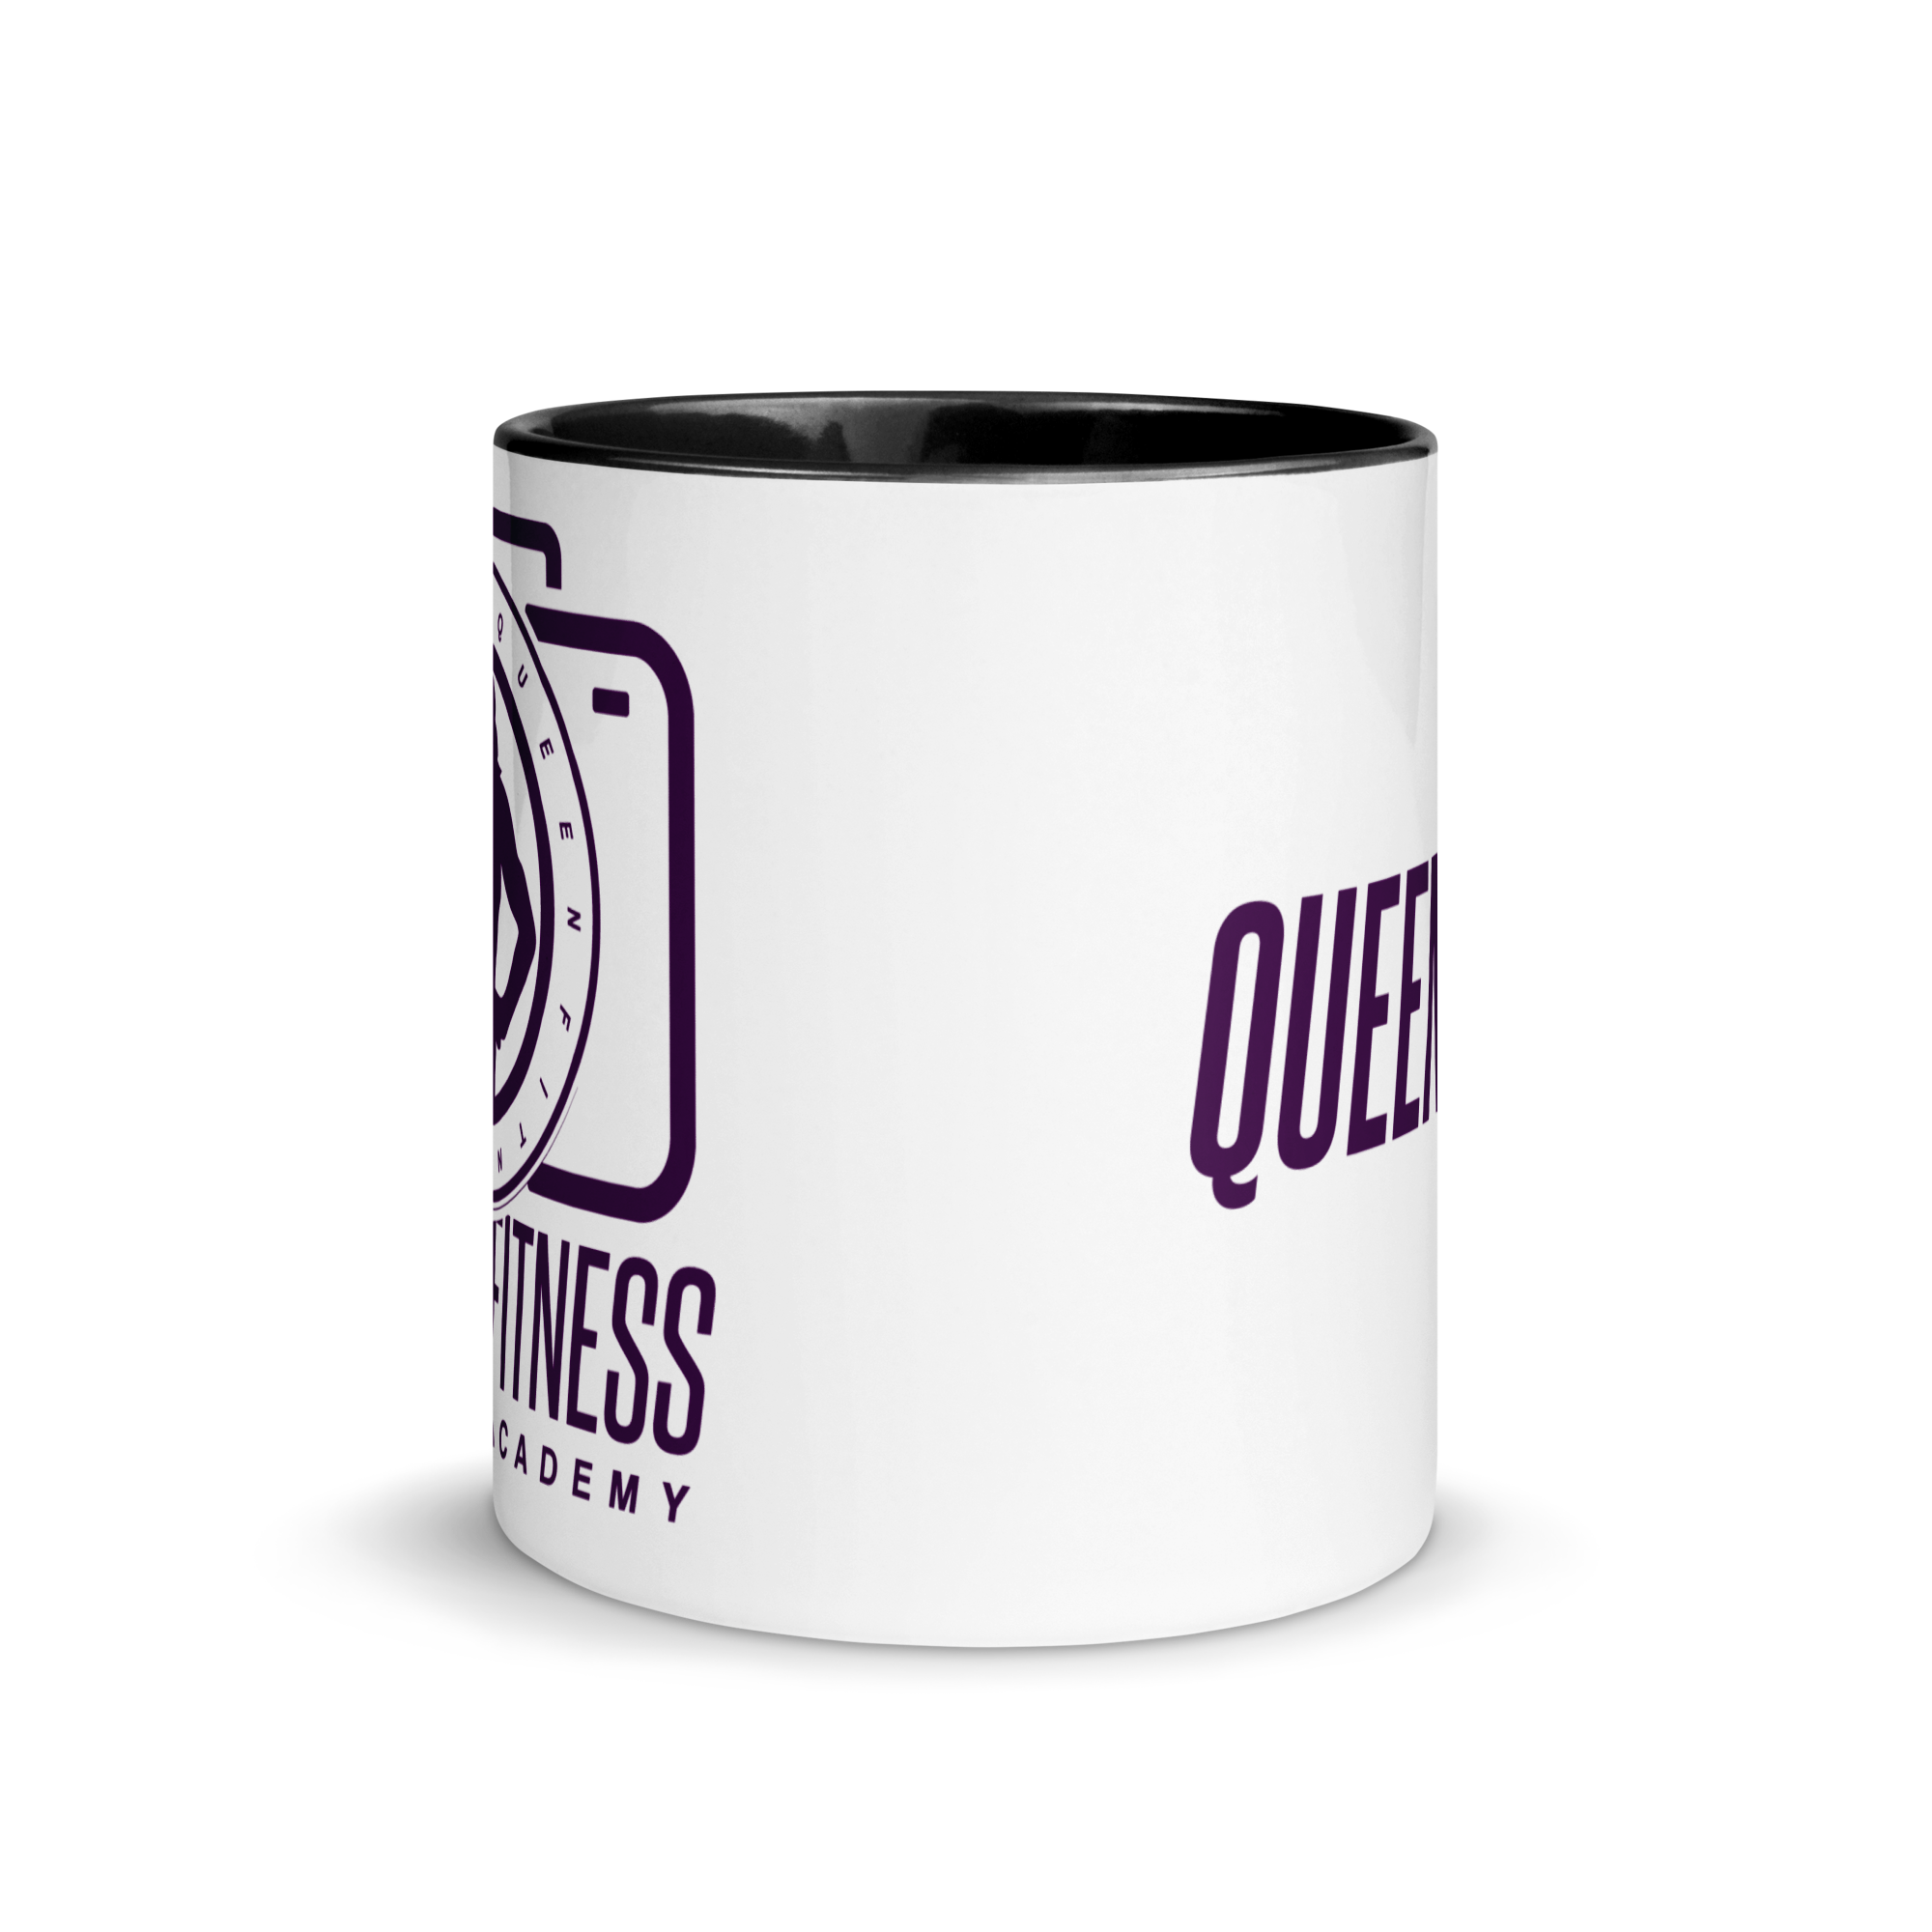 Queen Fitness Academy Ceramic Mug Black Color Inside and Dark Purple Logo